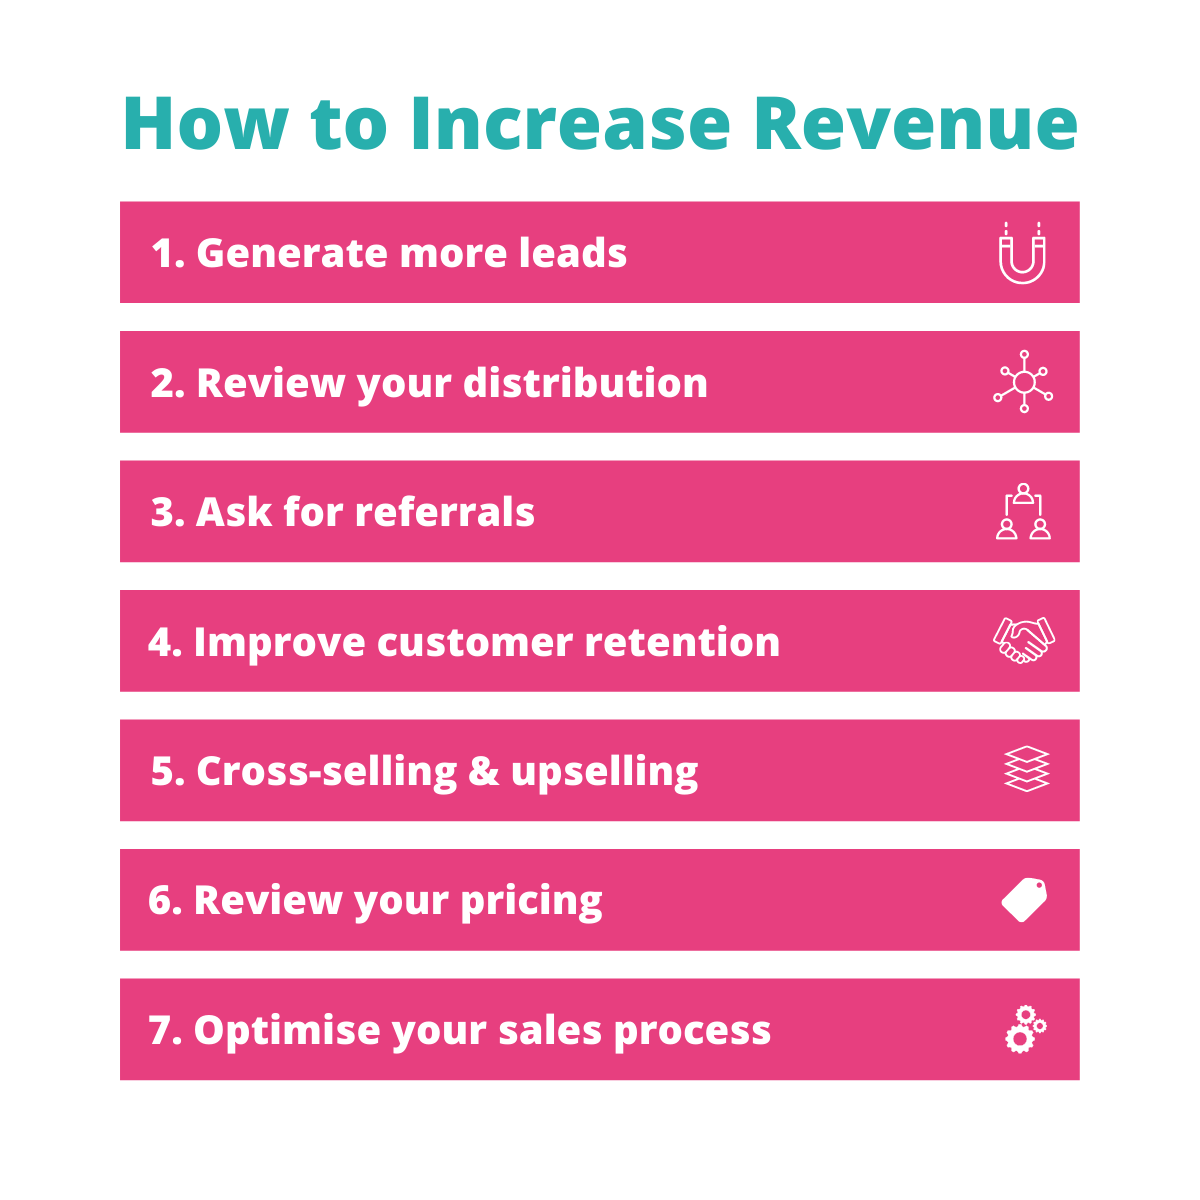 Ways to increase revenue